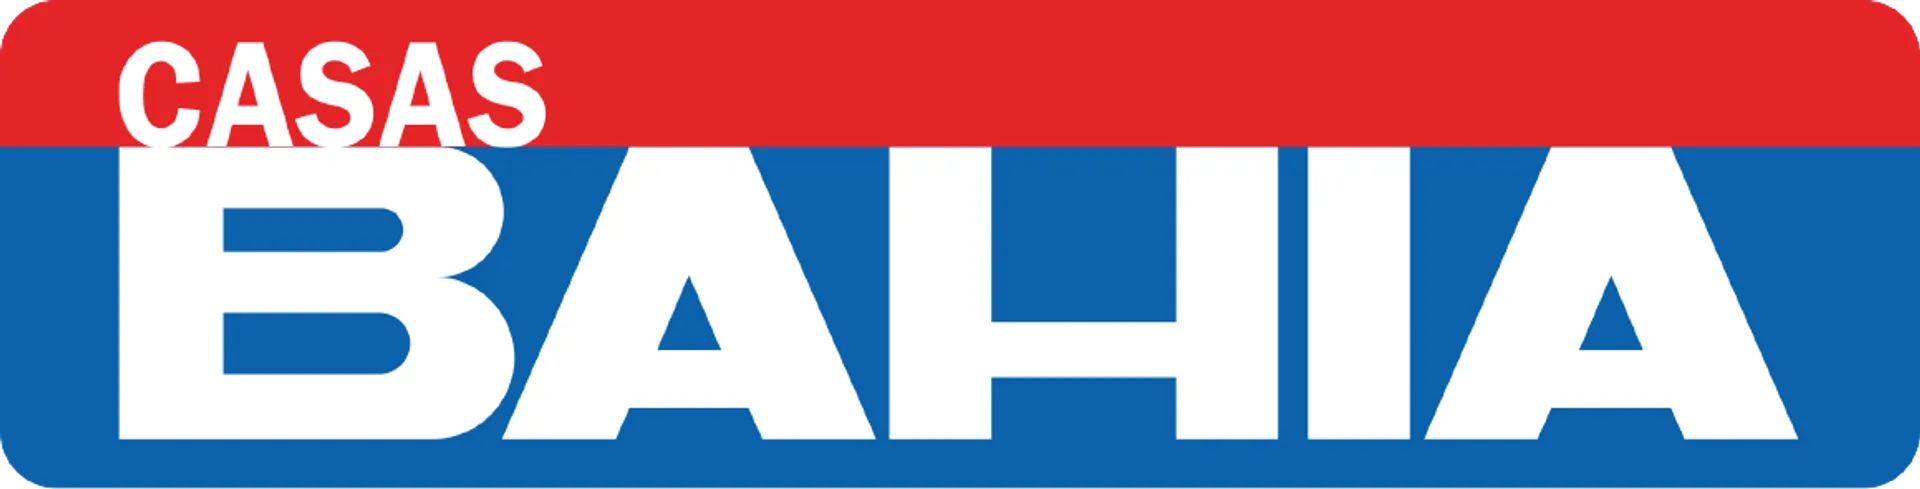 CASAS BAHIA logo